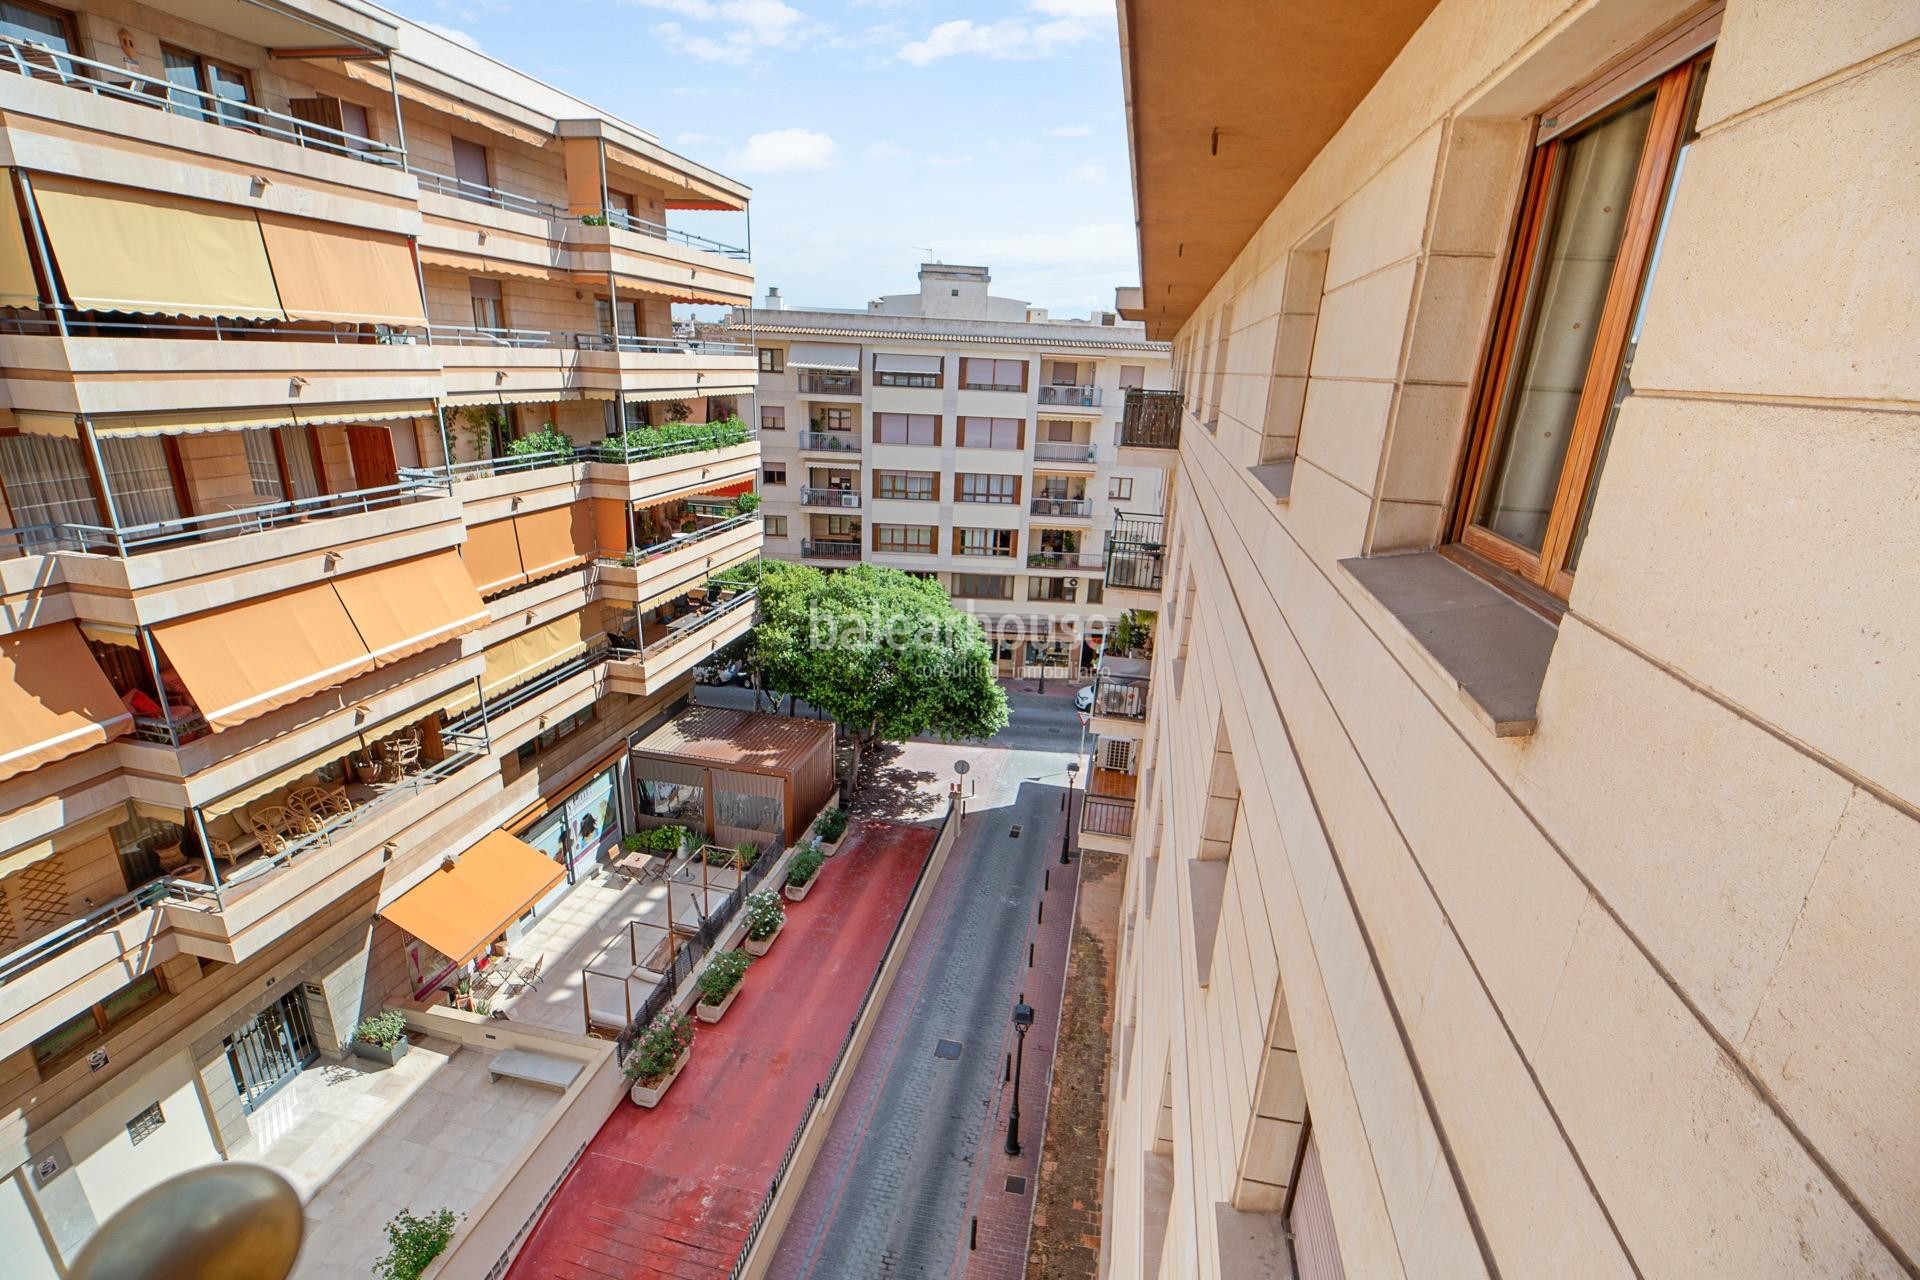 Excelente y luminoso piso de grandes dimensiones ubicado en la zona centro de Palma.